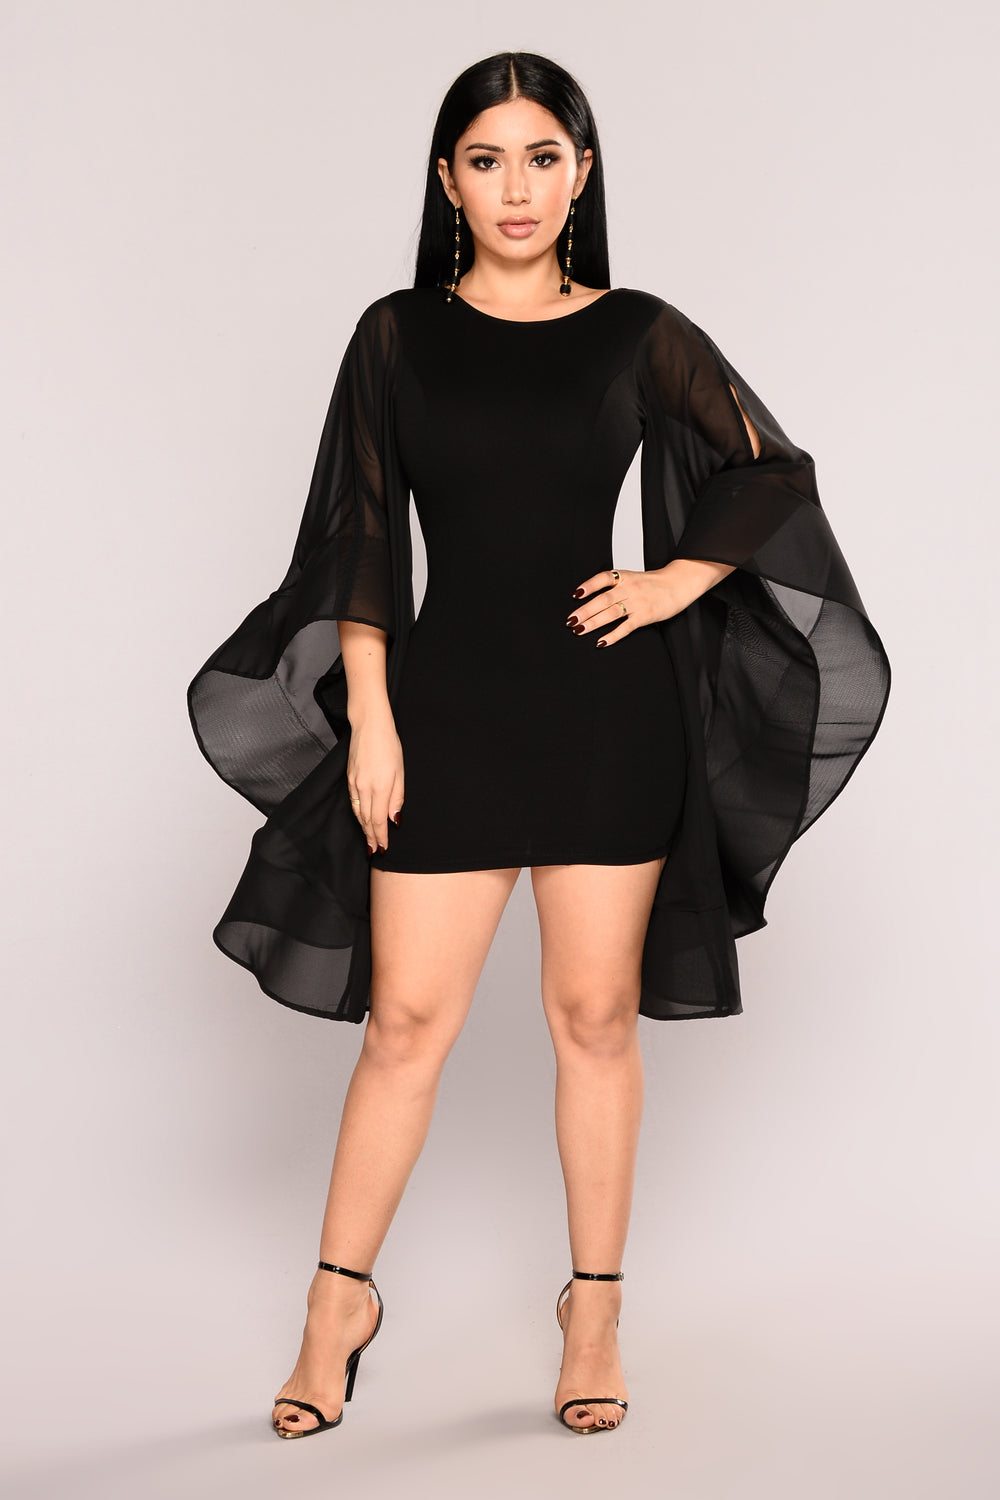 fashion nova black formal dress